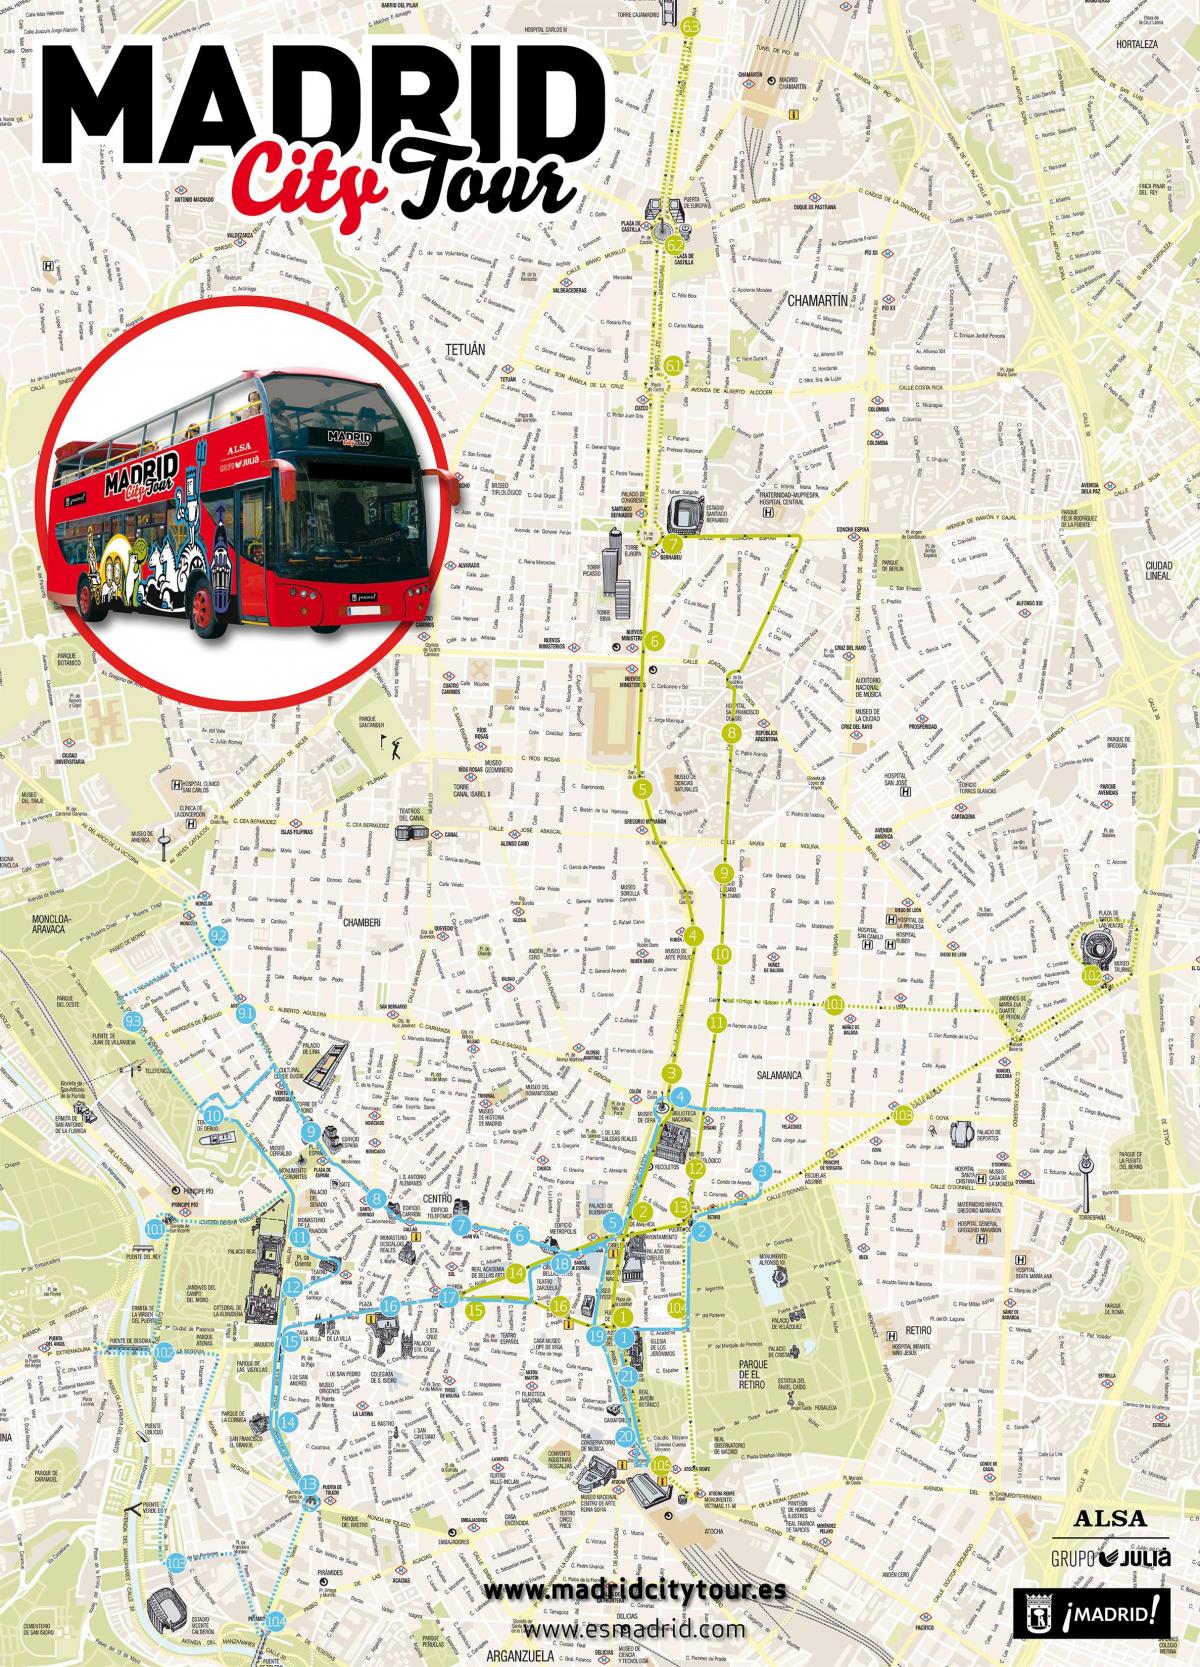 Madrid city tour en autobús mapa